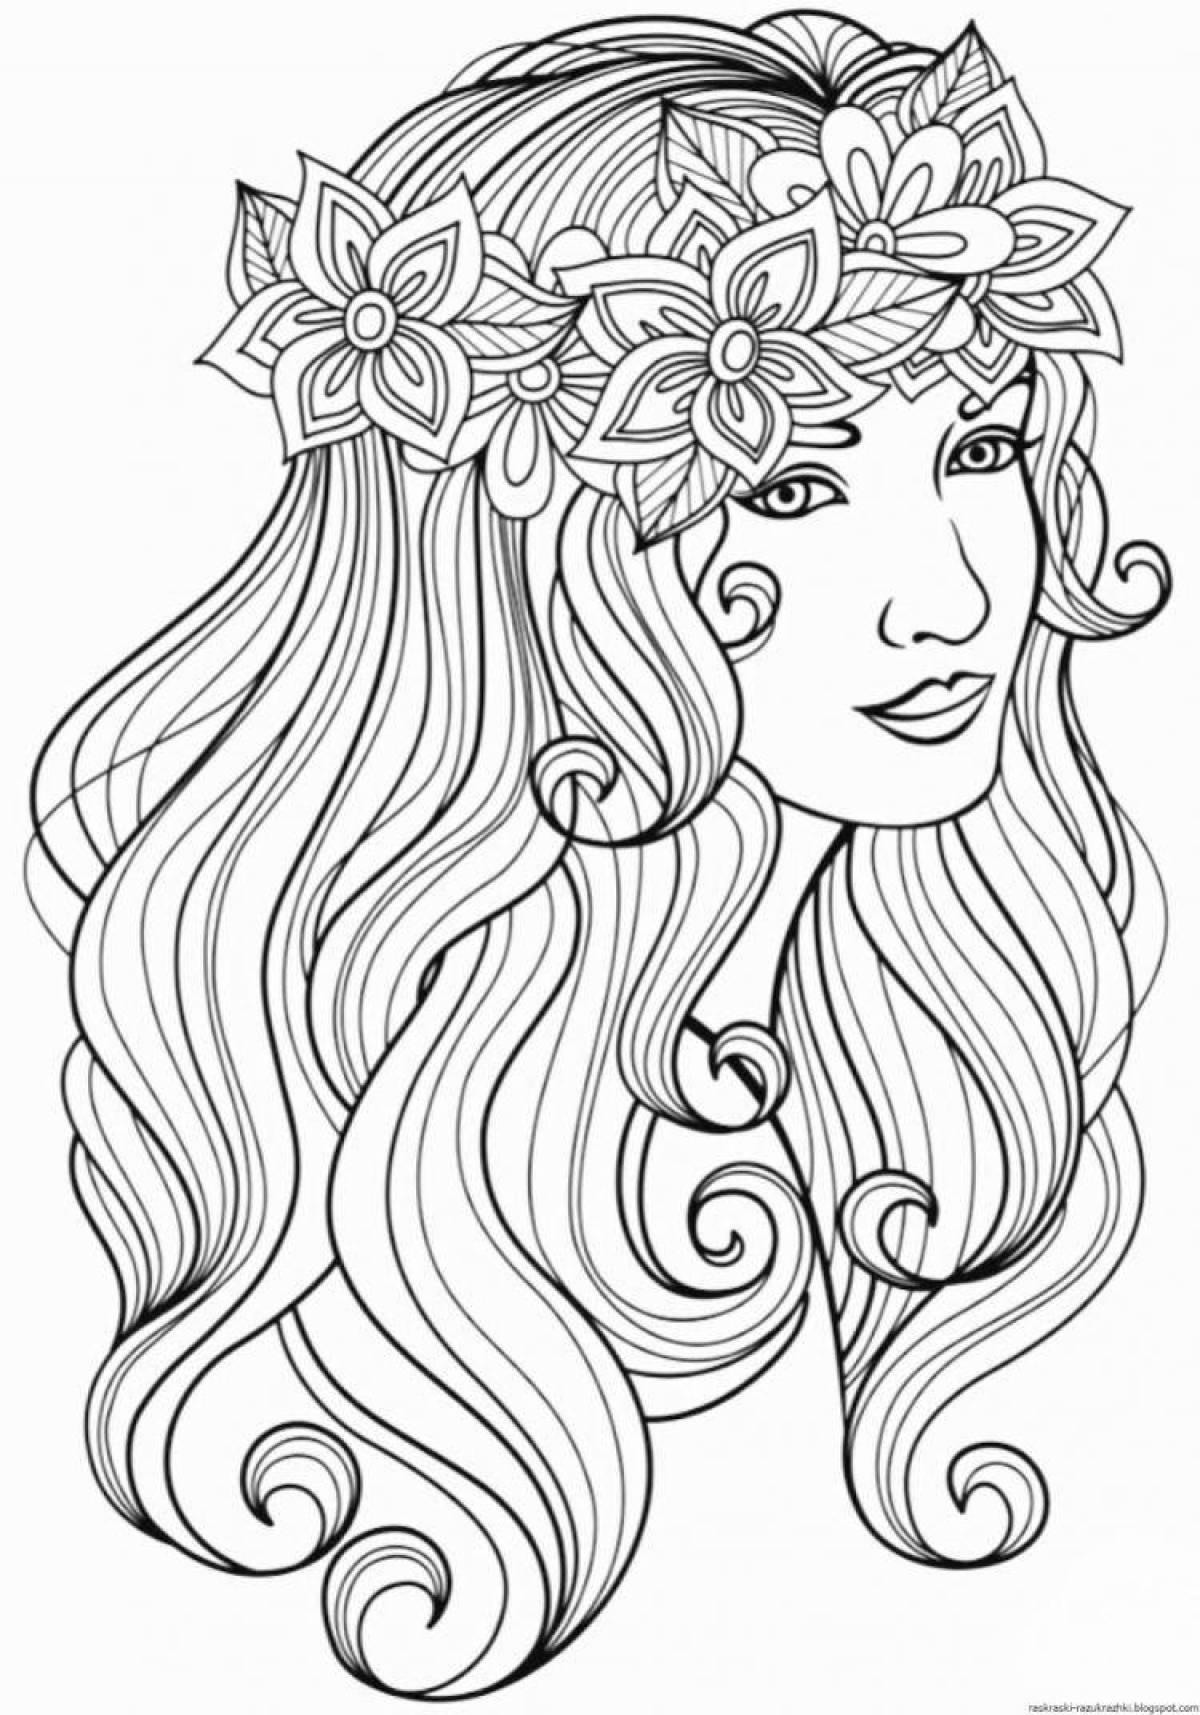 Изысканная раскраска девочки с длинными волосами